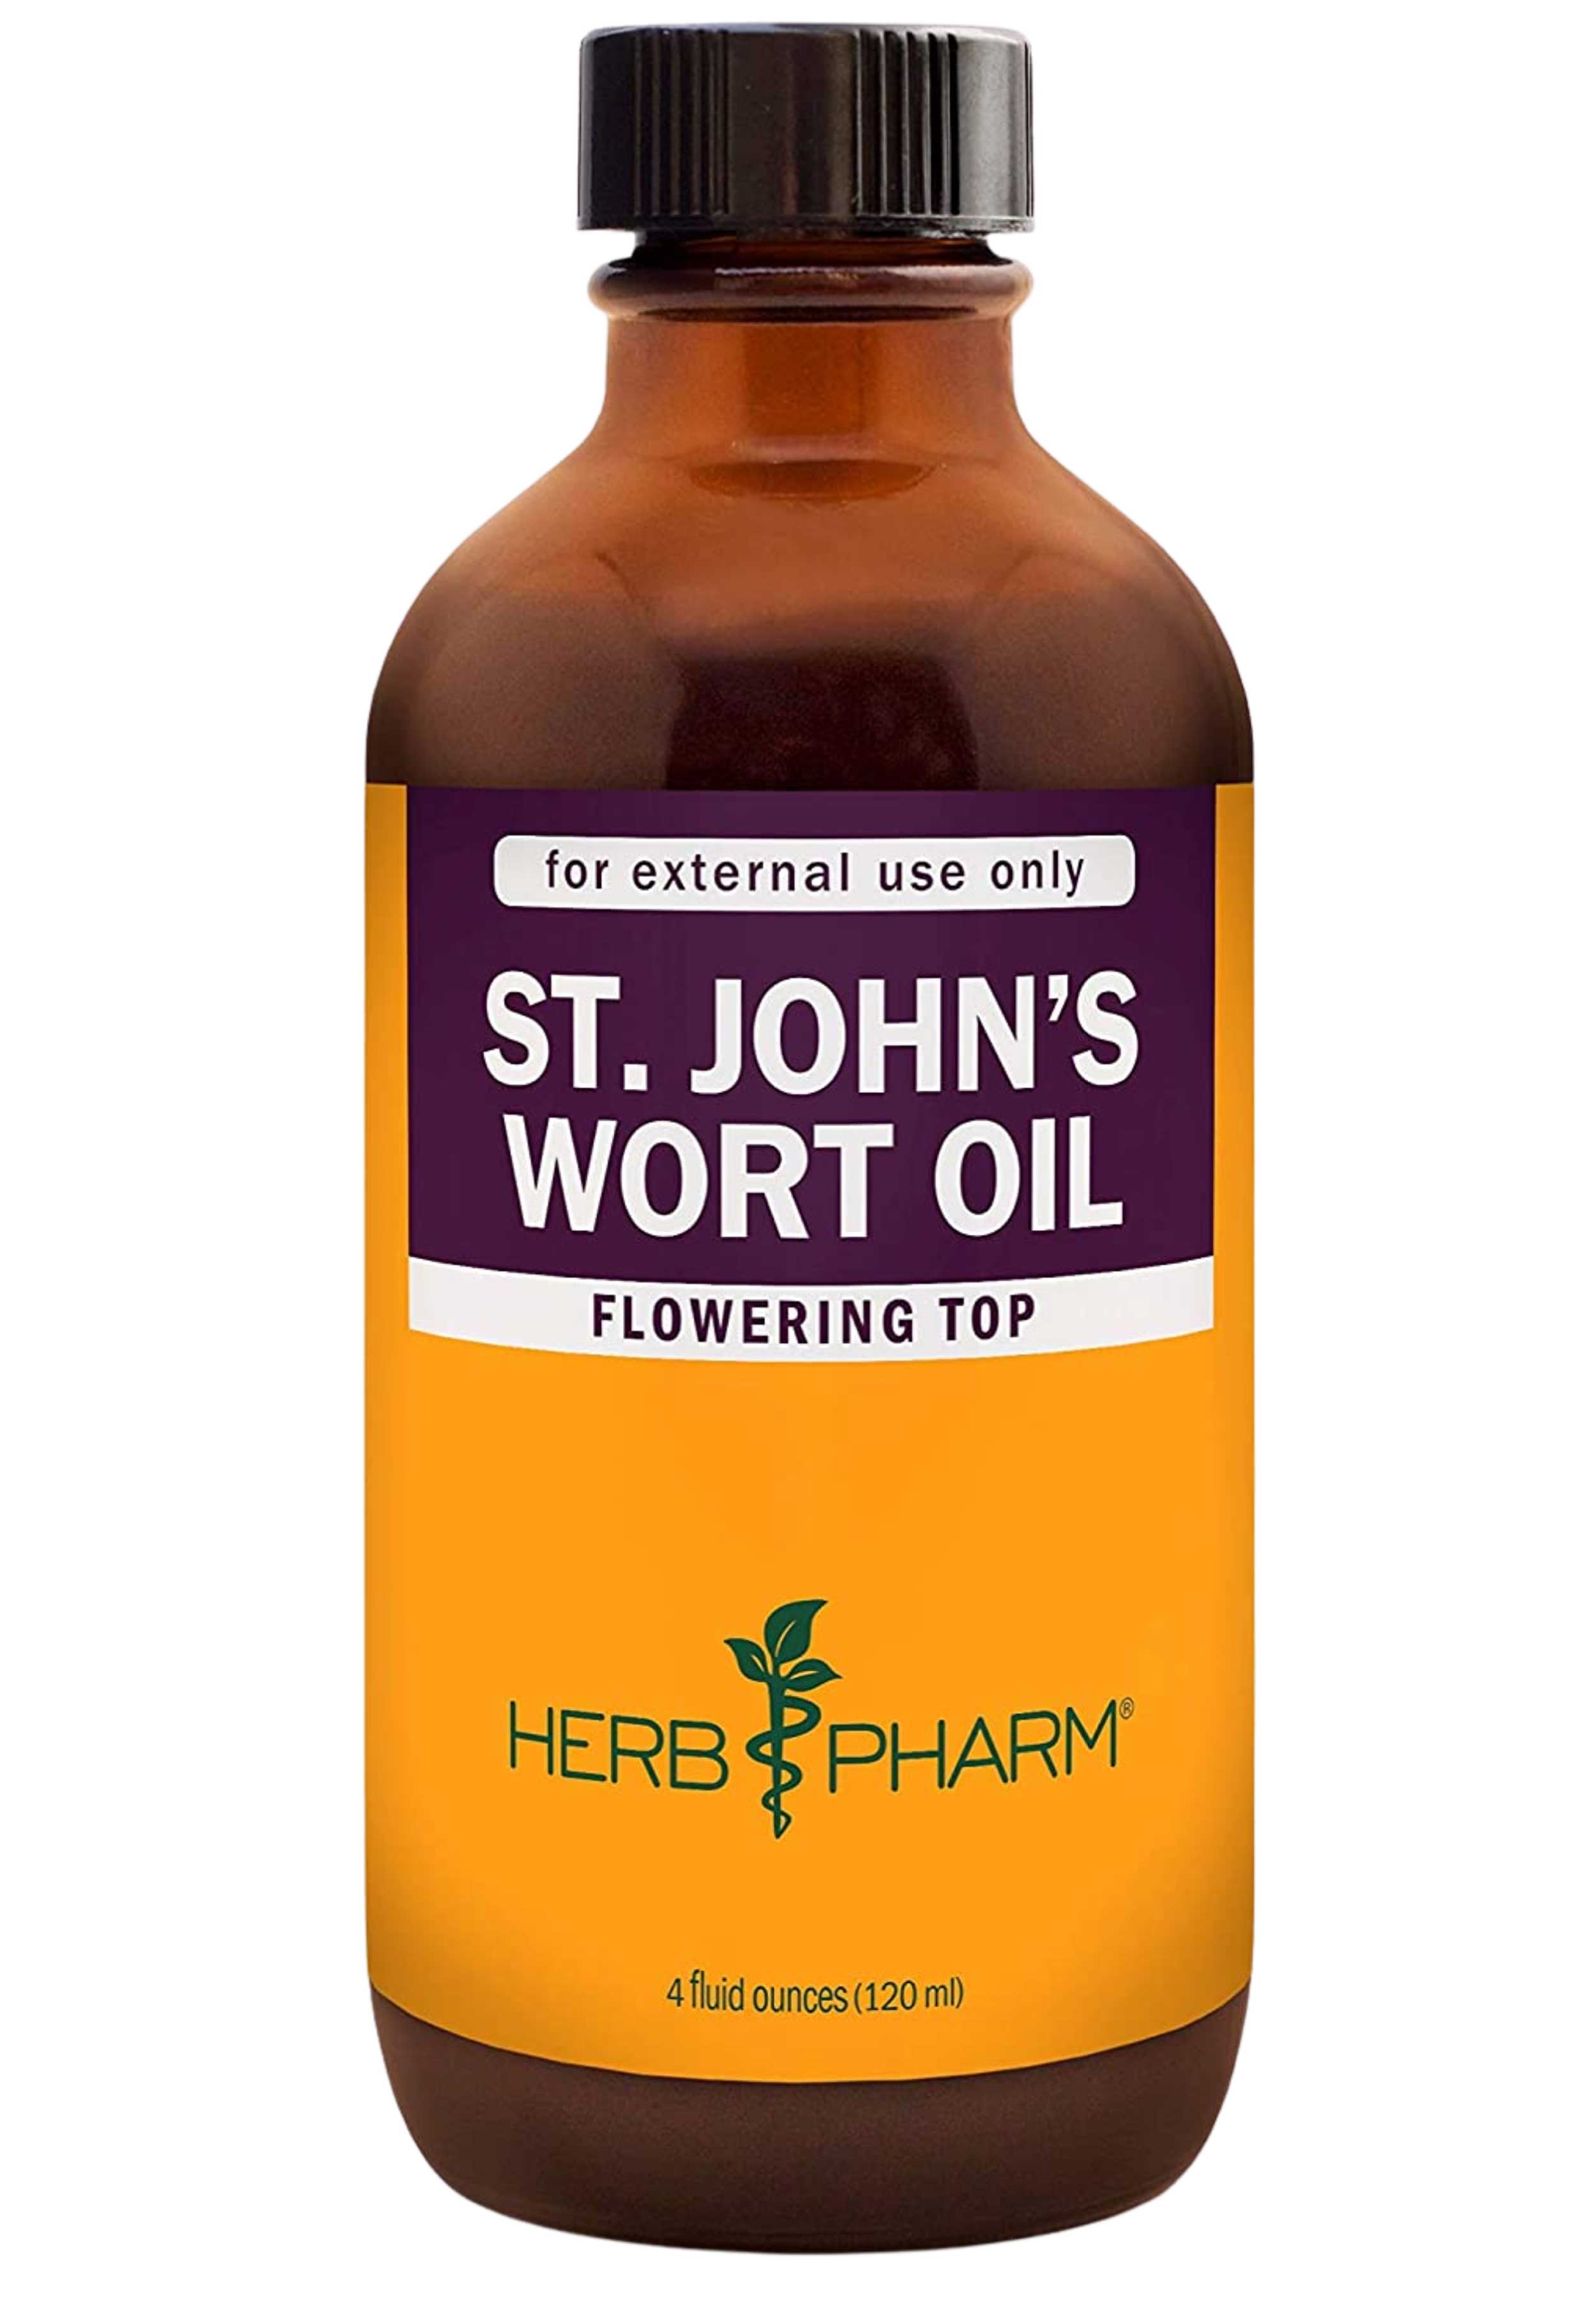 Herb Pharm St. John's Wort Oil 